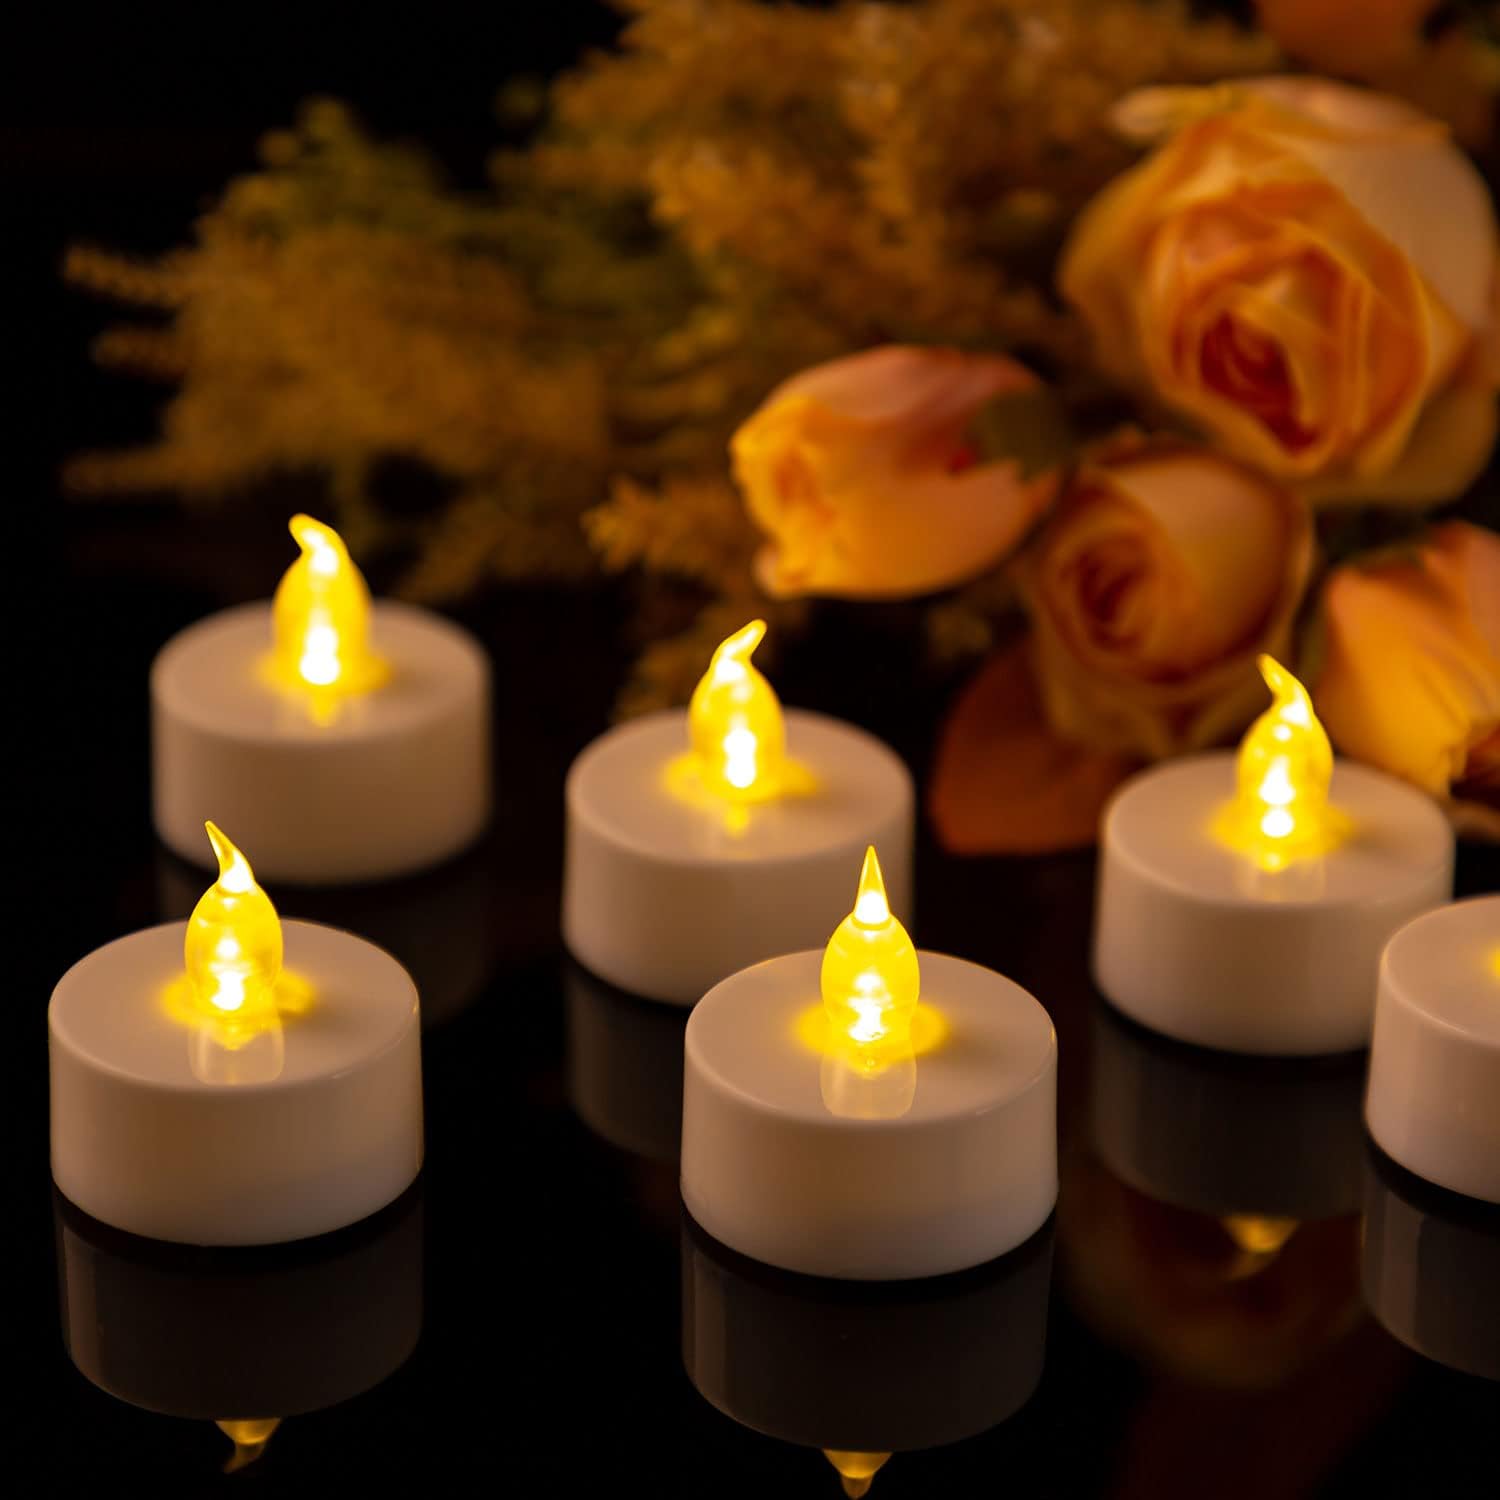 Candlesee Led Teelichter 100 Stück Flammenlose Led Kerzen, Elektrische Gefälschte Kerze mit Flackernd Lichter - Batteriebetrieben Teelichter für Weihnachten Ostern Hochzeit Party Dekoration (WarmGelb)